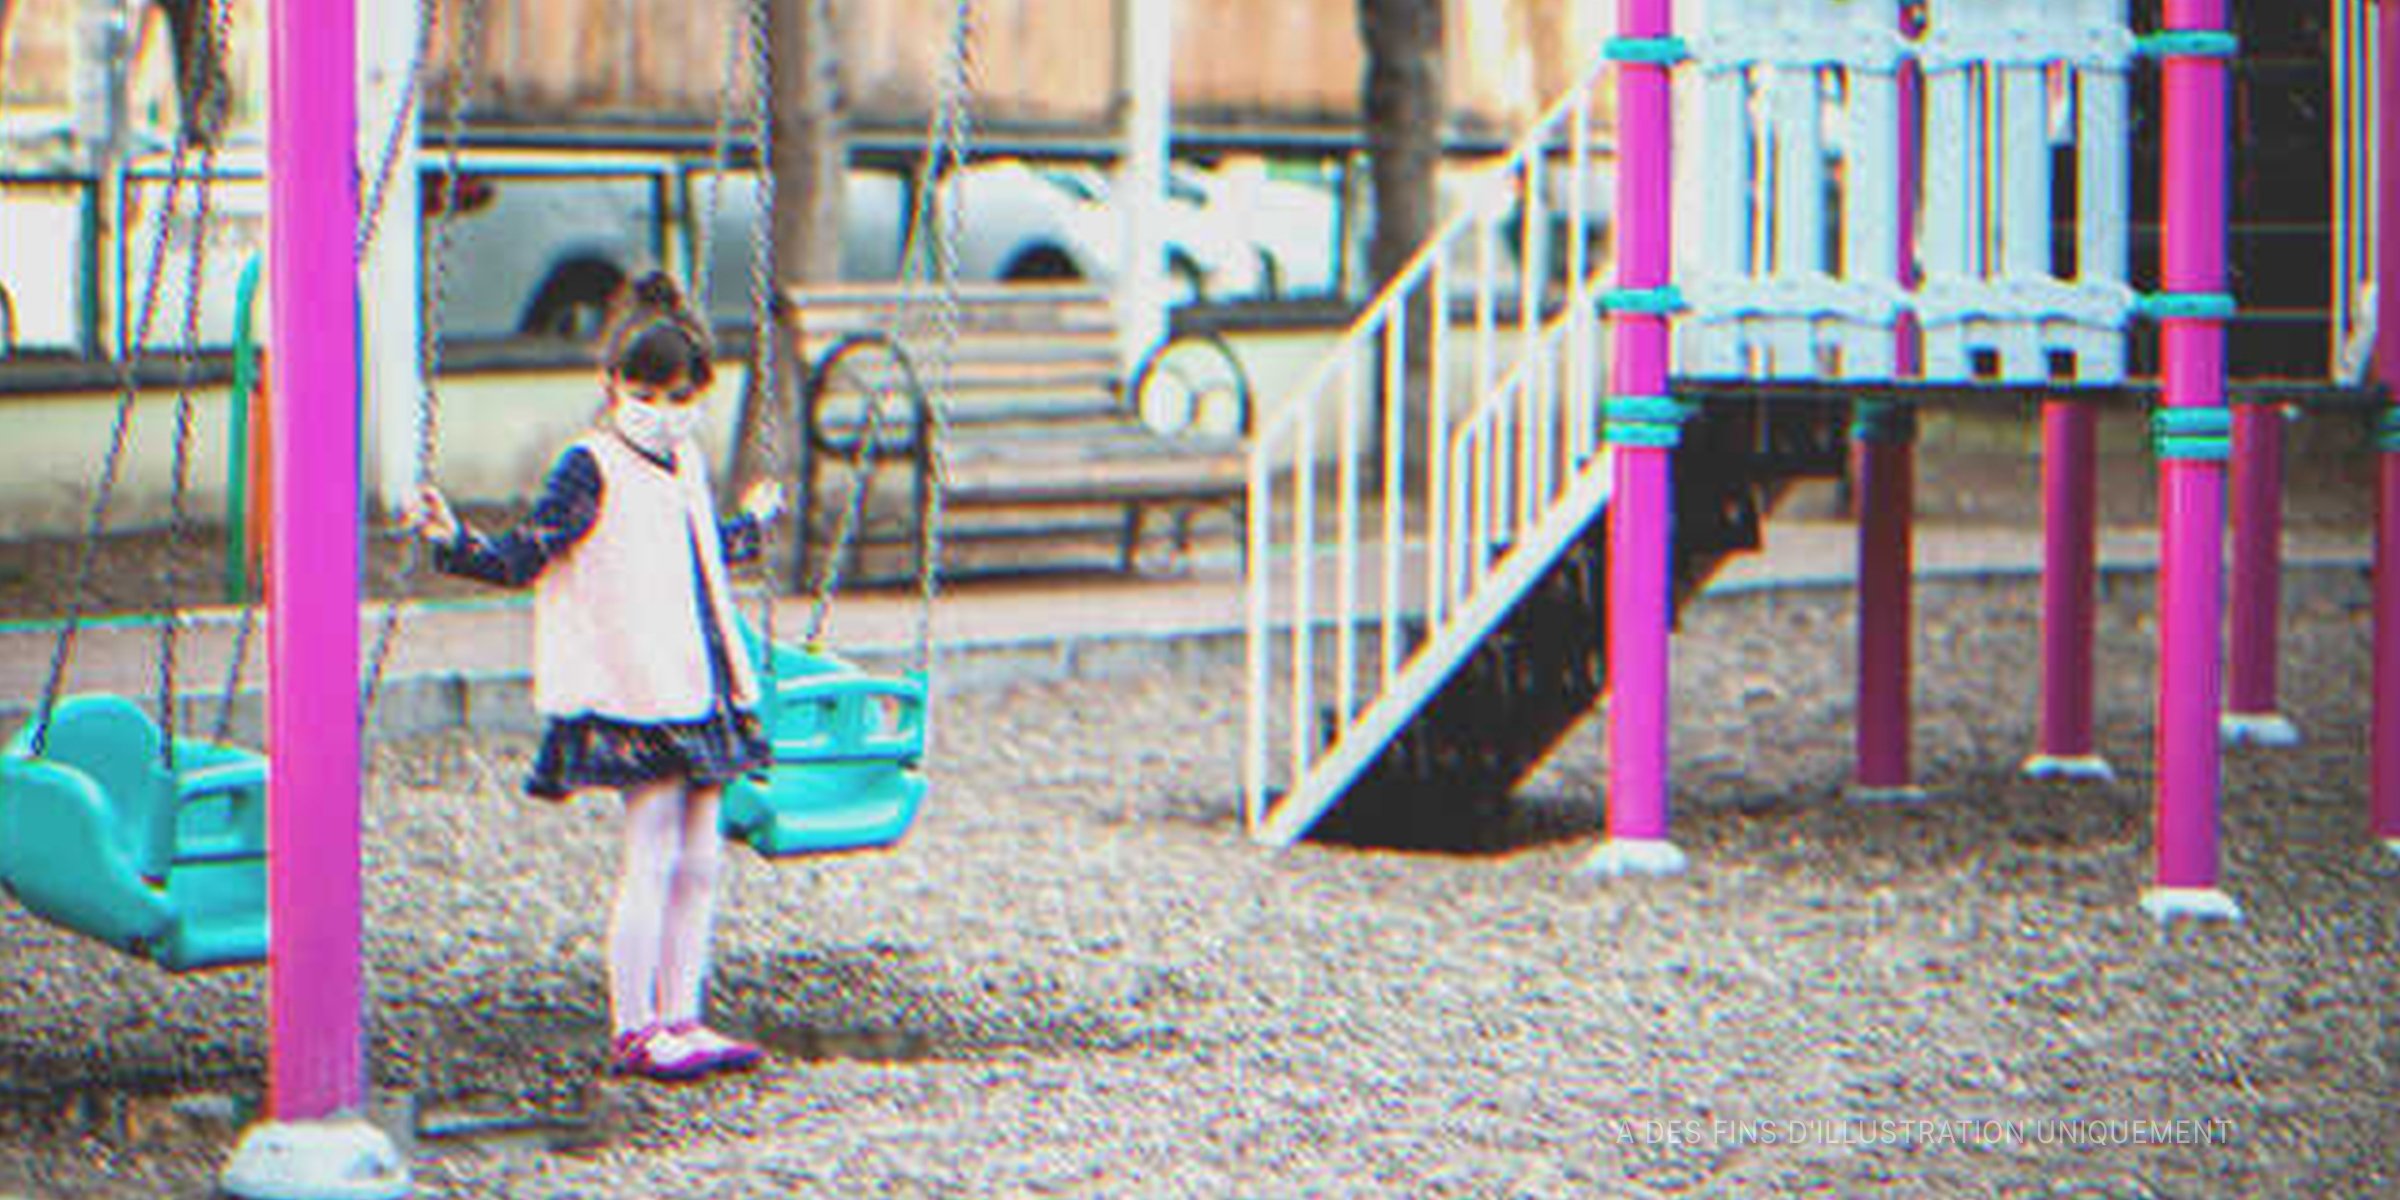 Une petite fille près de la balançoire dans un parc de jeux | Source : Getty Images